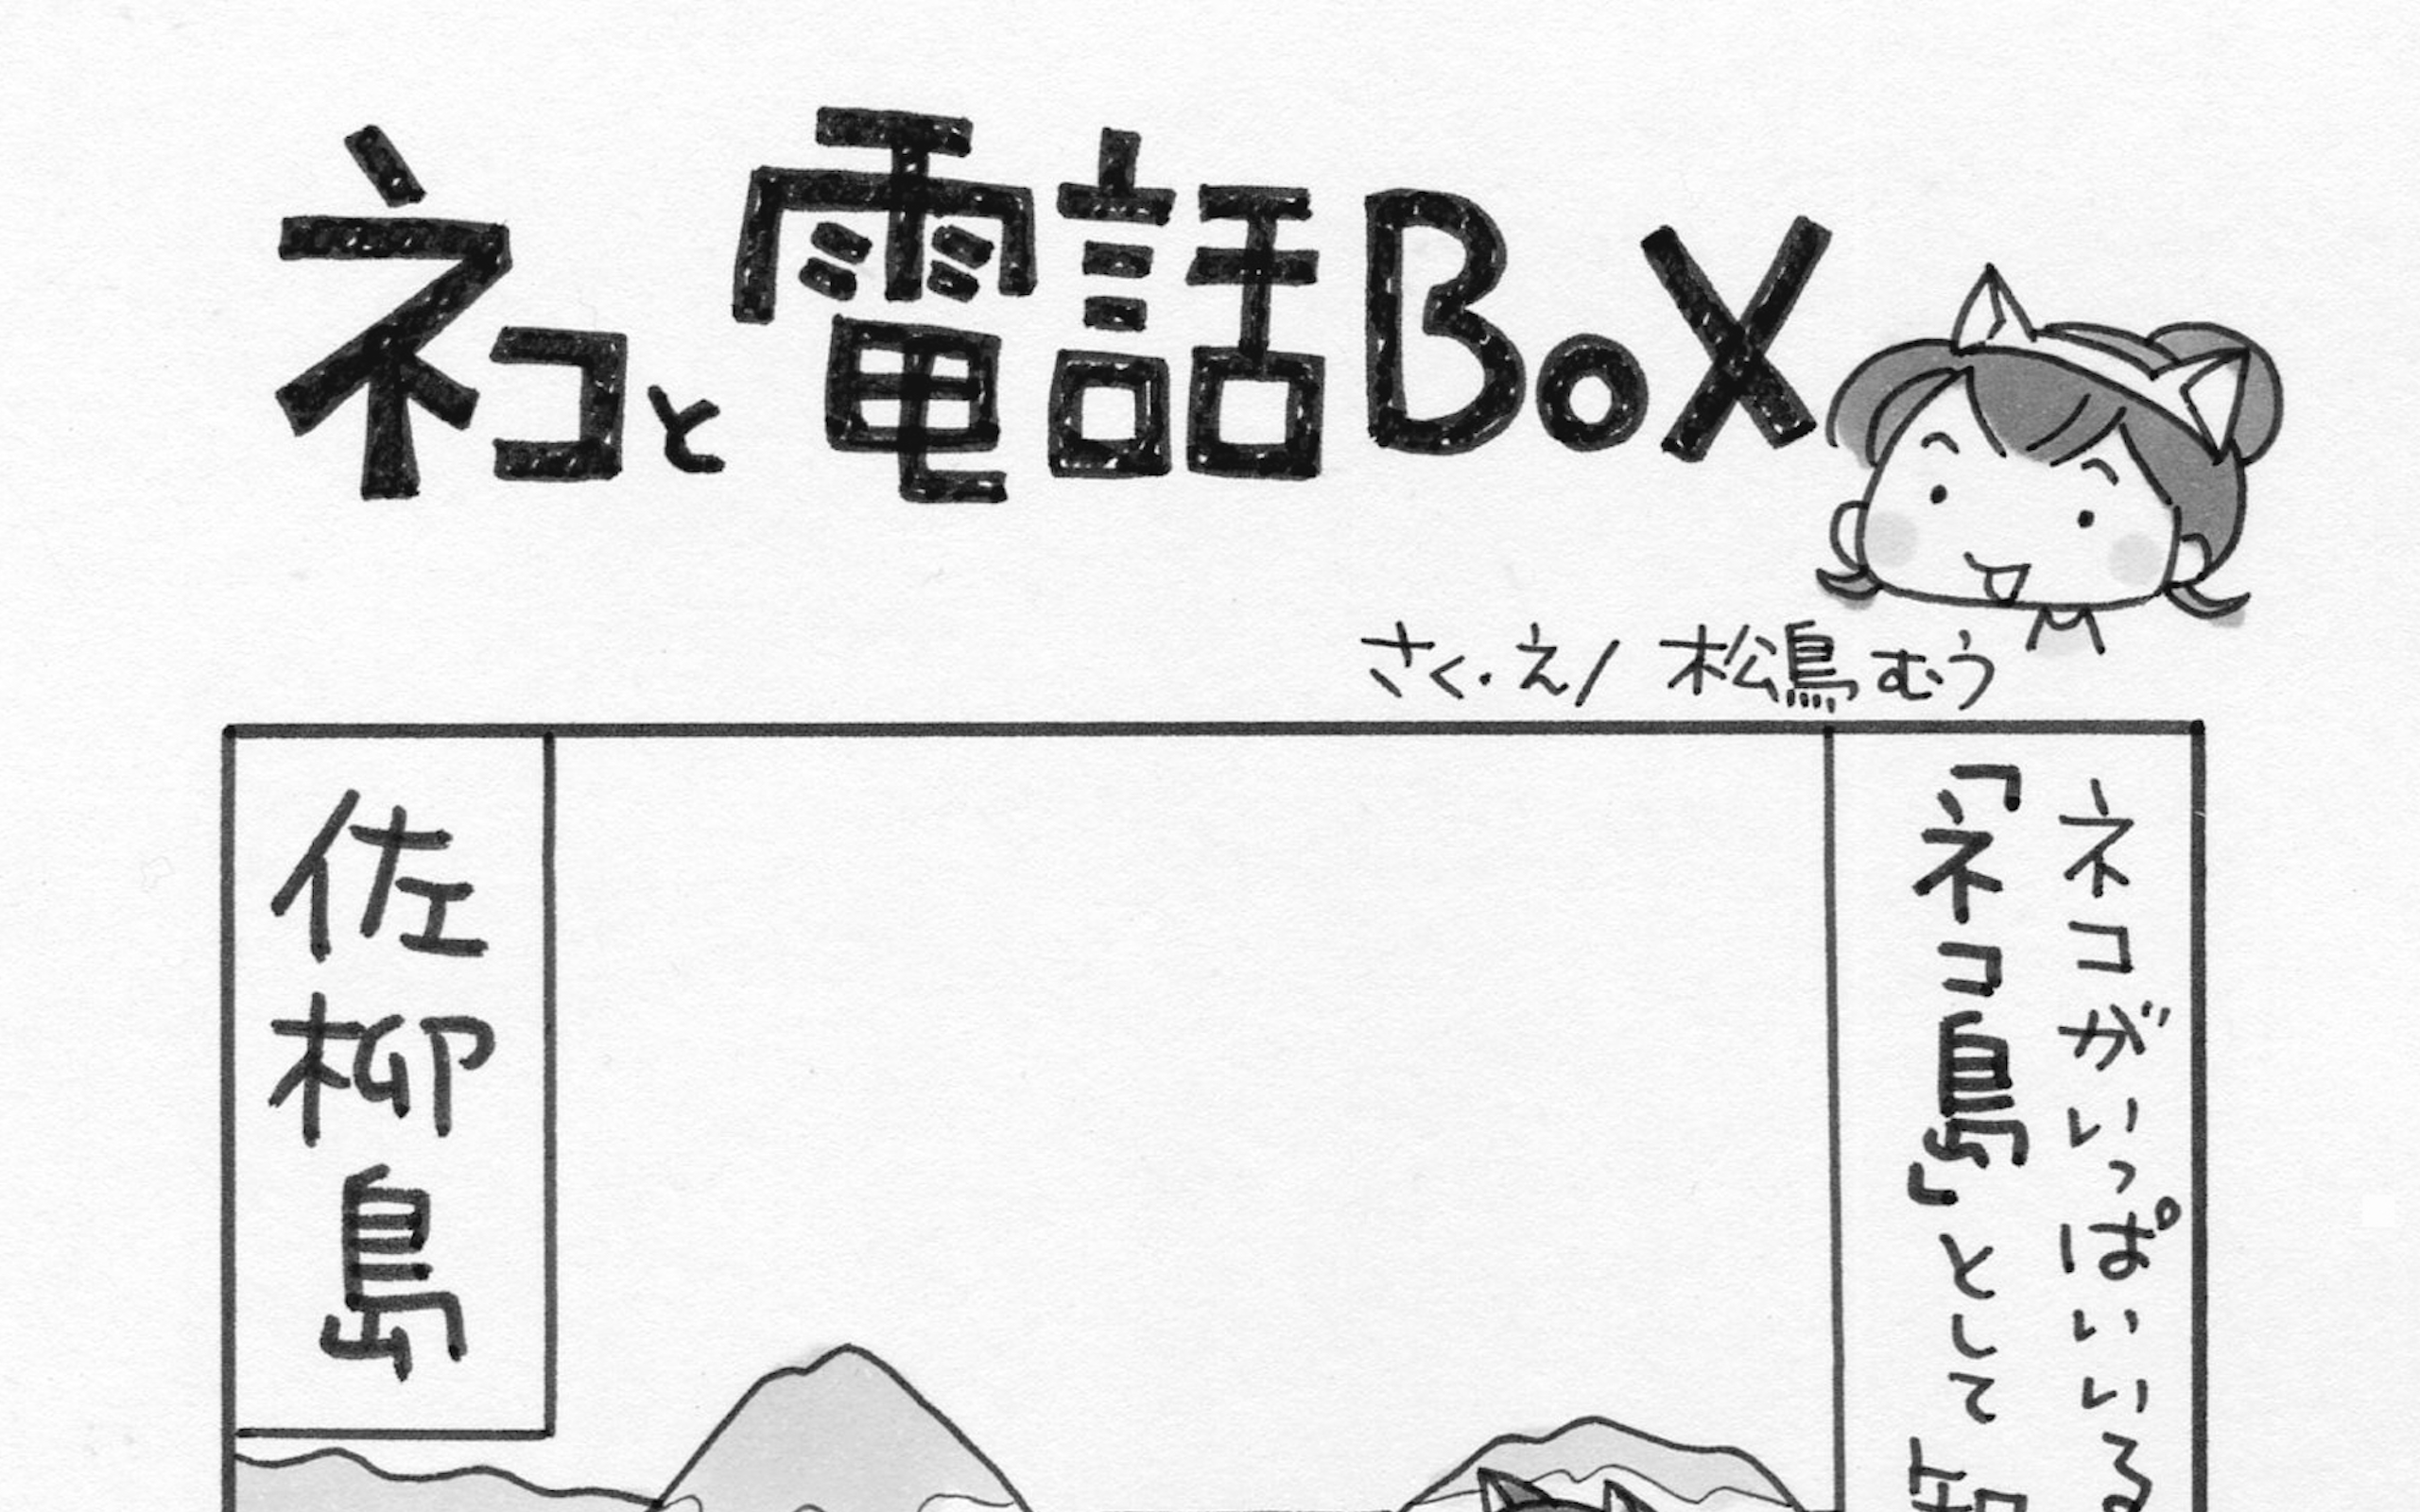 4コマ漫画 島旅是好日 7 ネコと電話box 寄稿 松鳥むう Ritokei 離島経済新聞